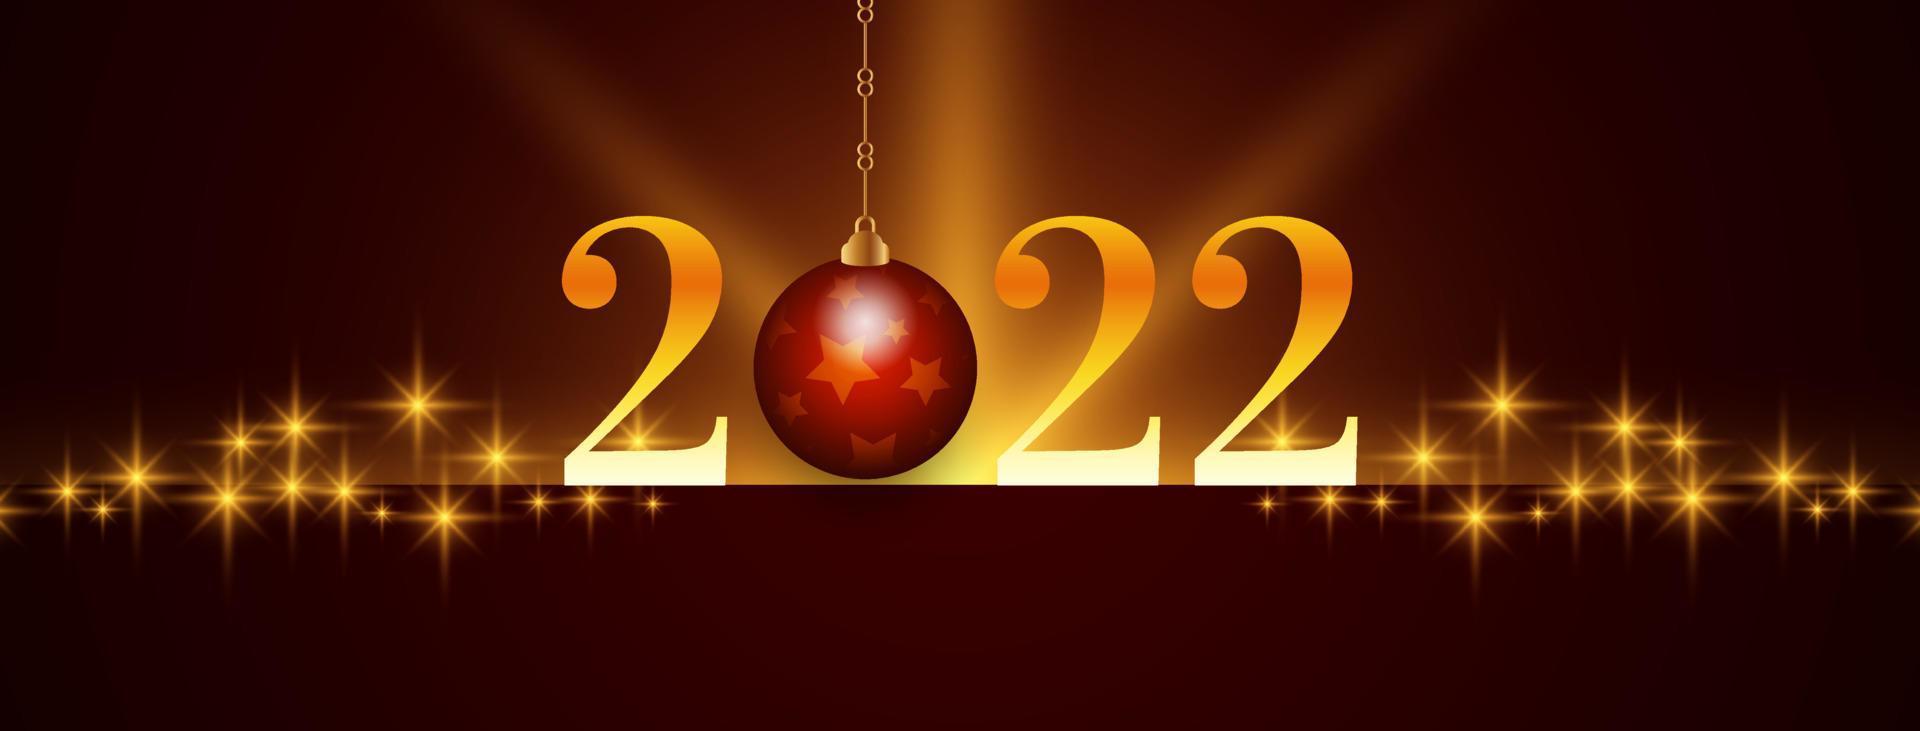 felice anno nuovo 2022 design banner stelle lucide vettore